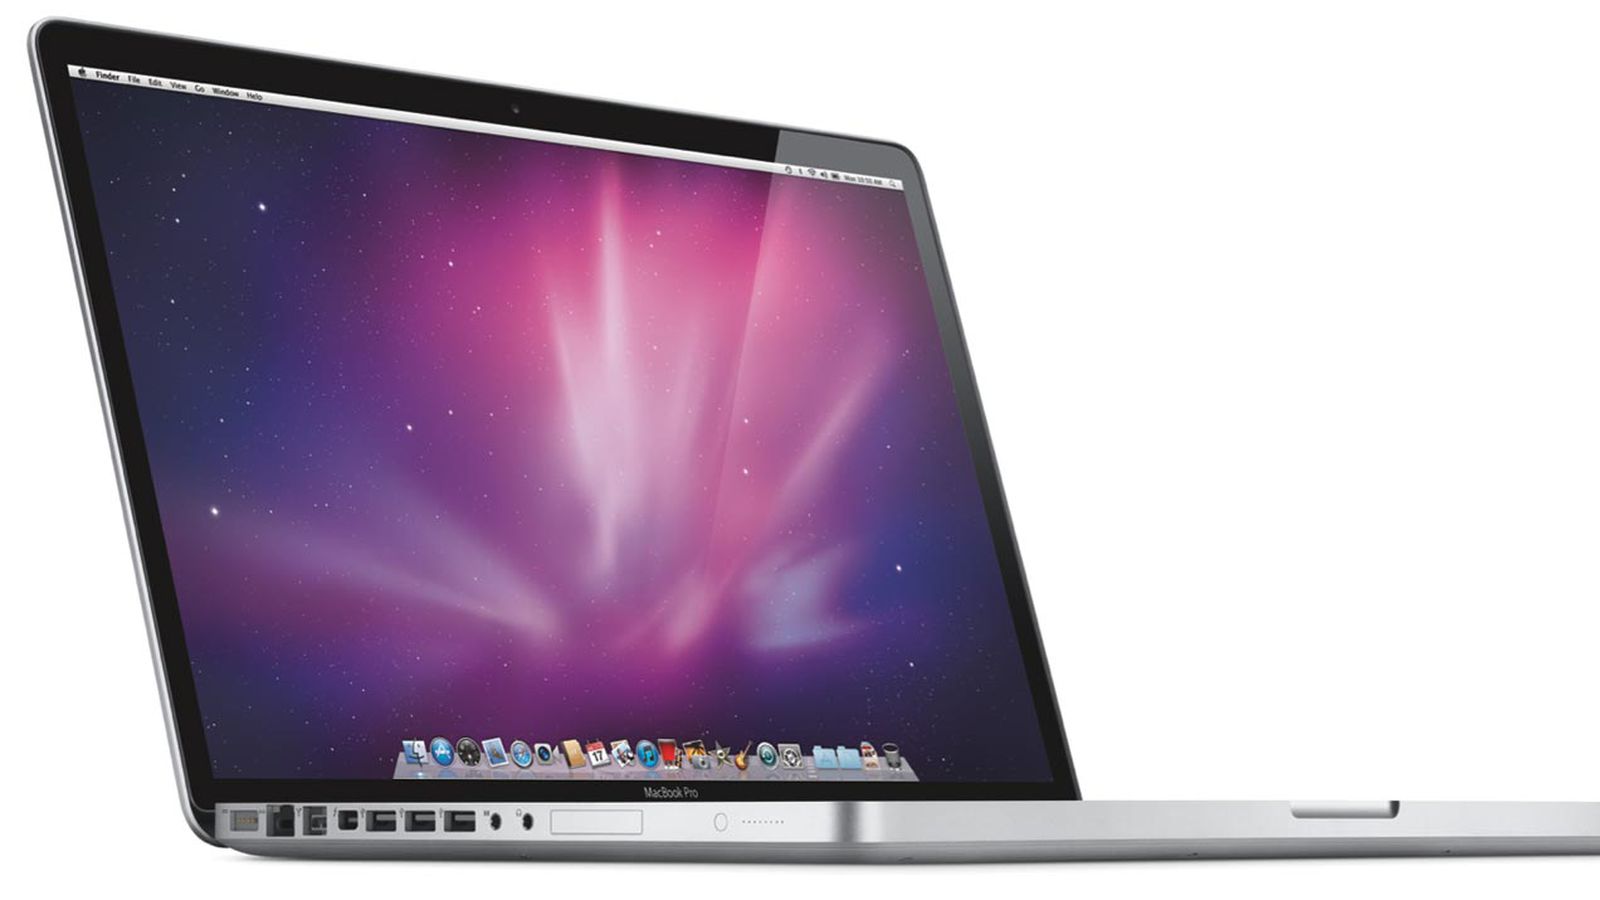 Apple macbook pro 17 a1212 release date uag ipad